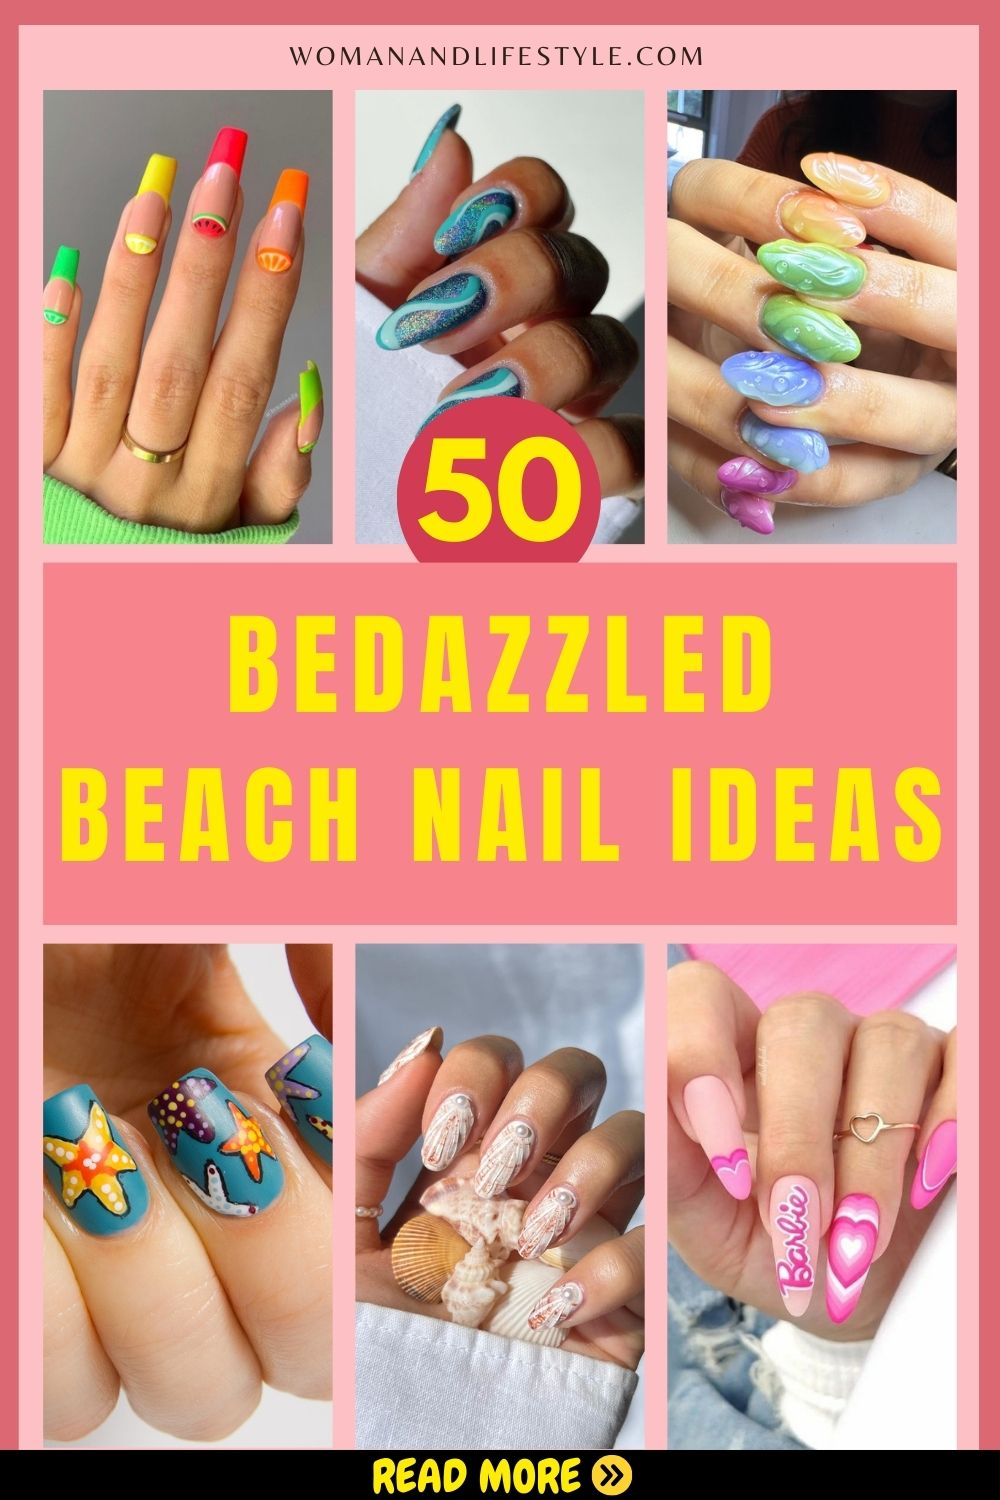 Beach-Nail-Ideas-Pin